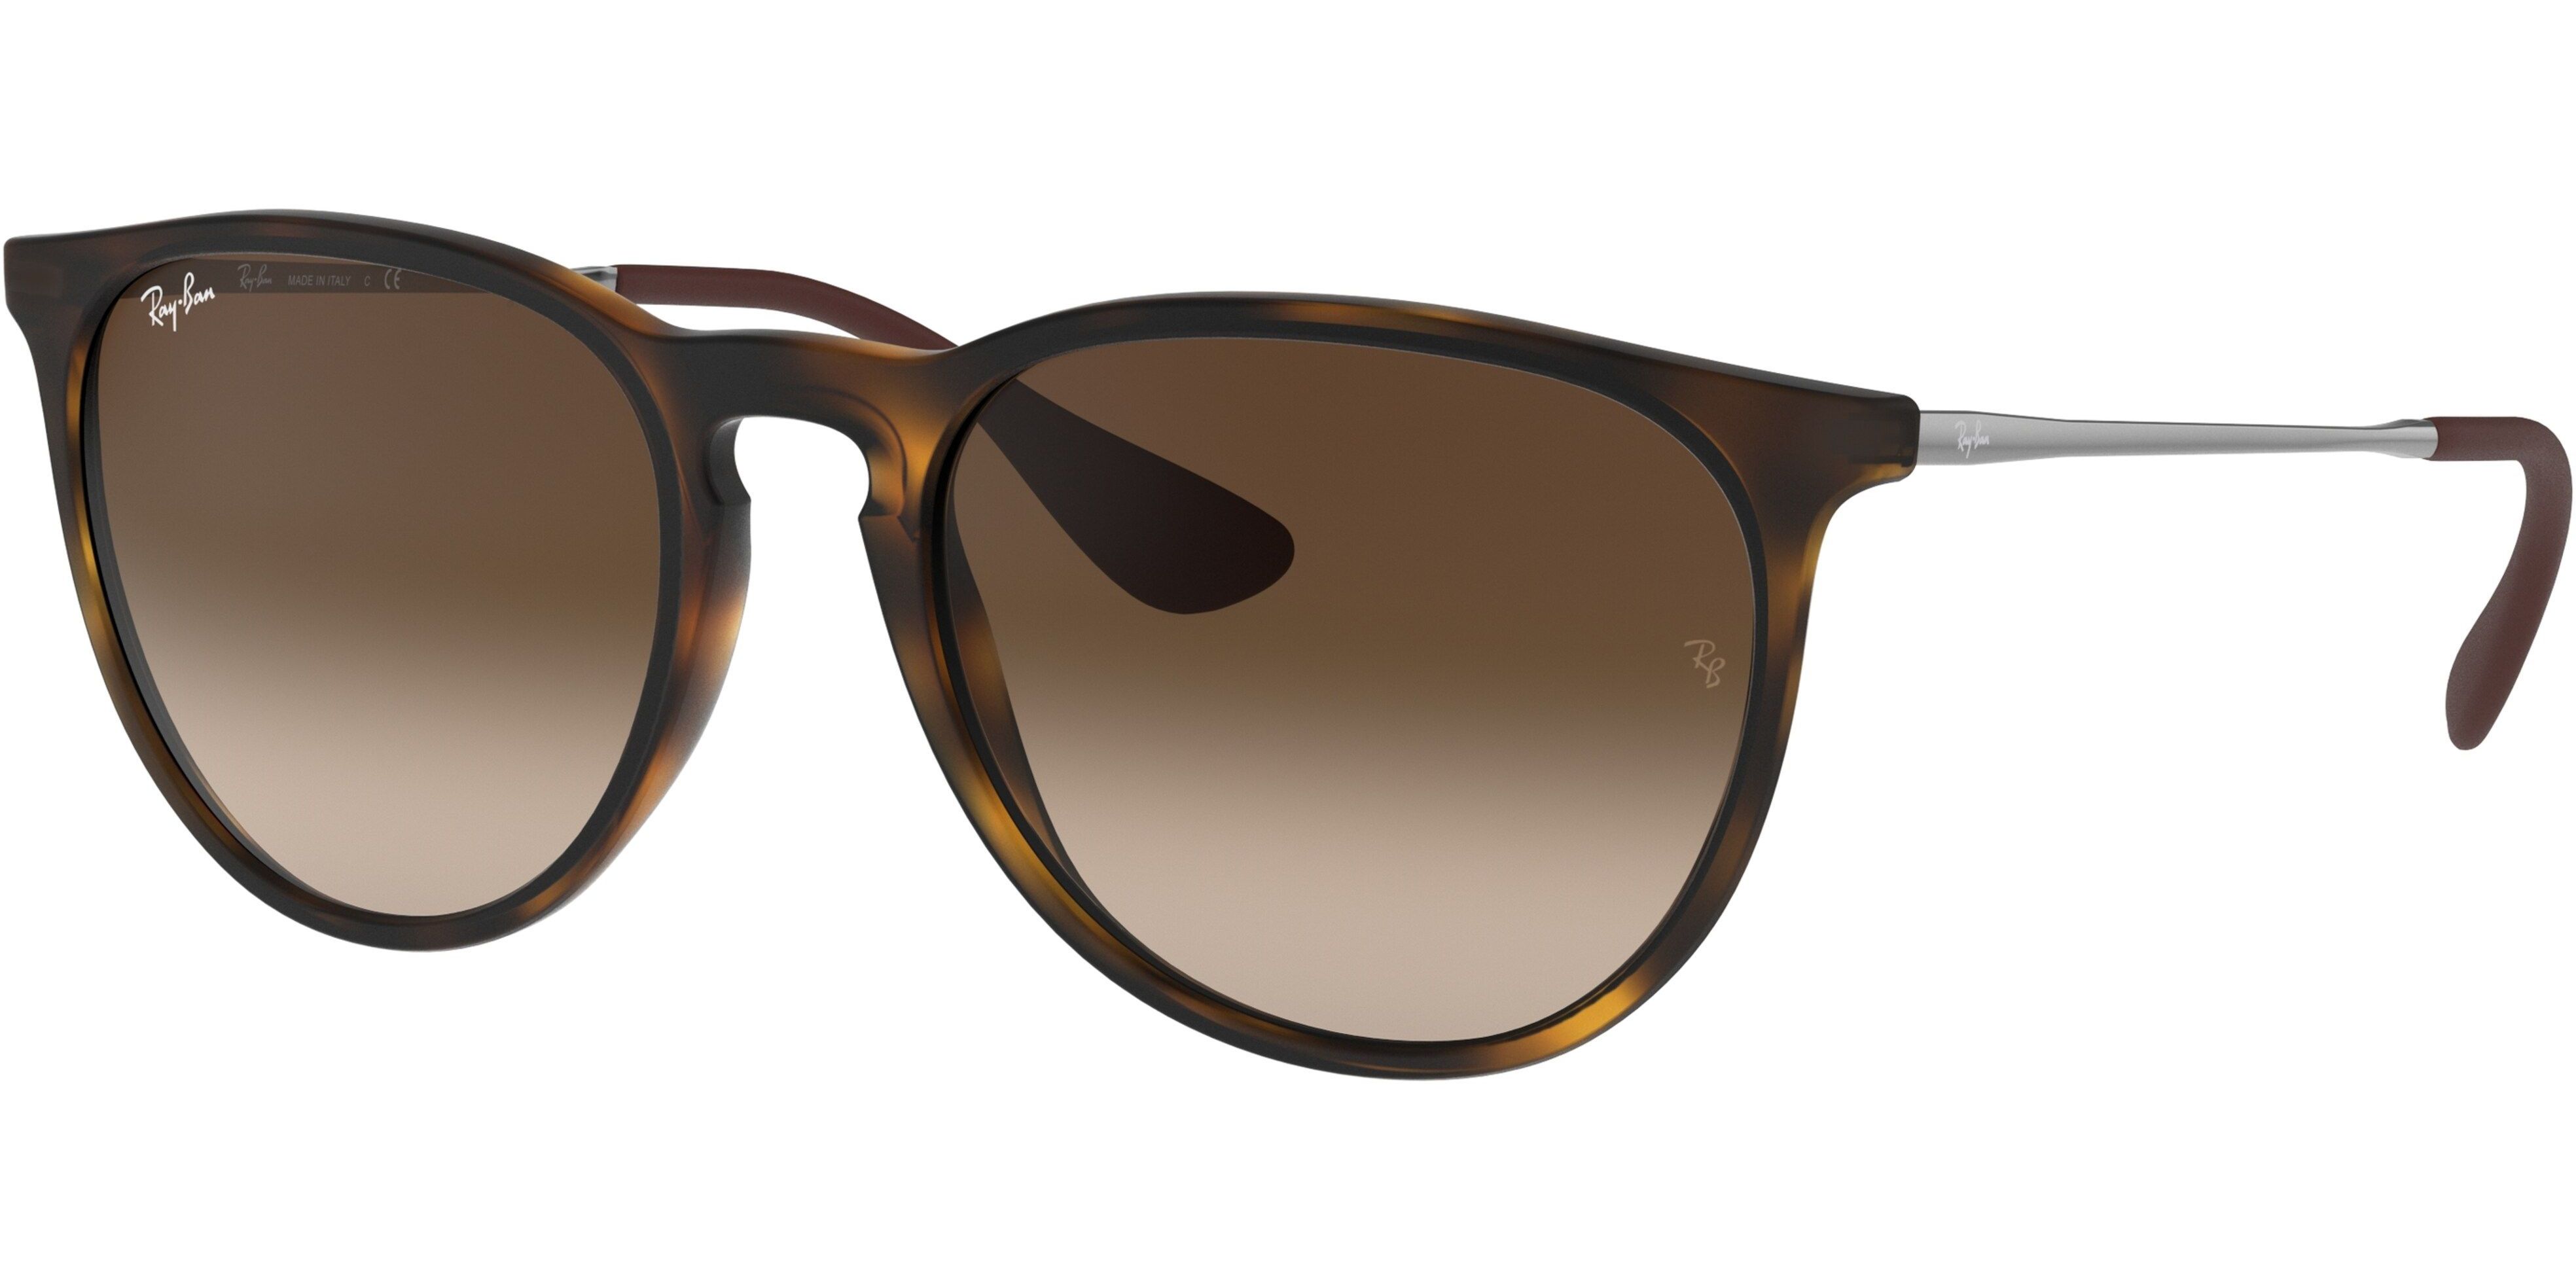 Sluneční brýle Ray-Ban® model 4171, barva obruby hnědá mat stříbrná, čočka hnědá gradál, kód barevné varianty 86513. 